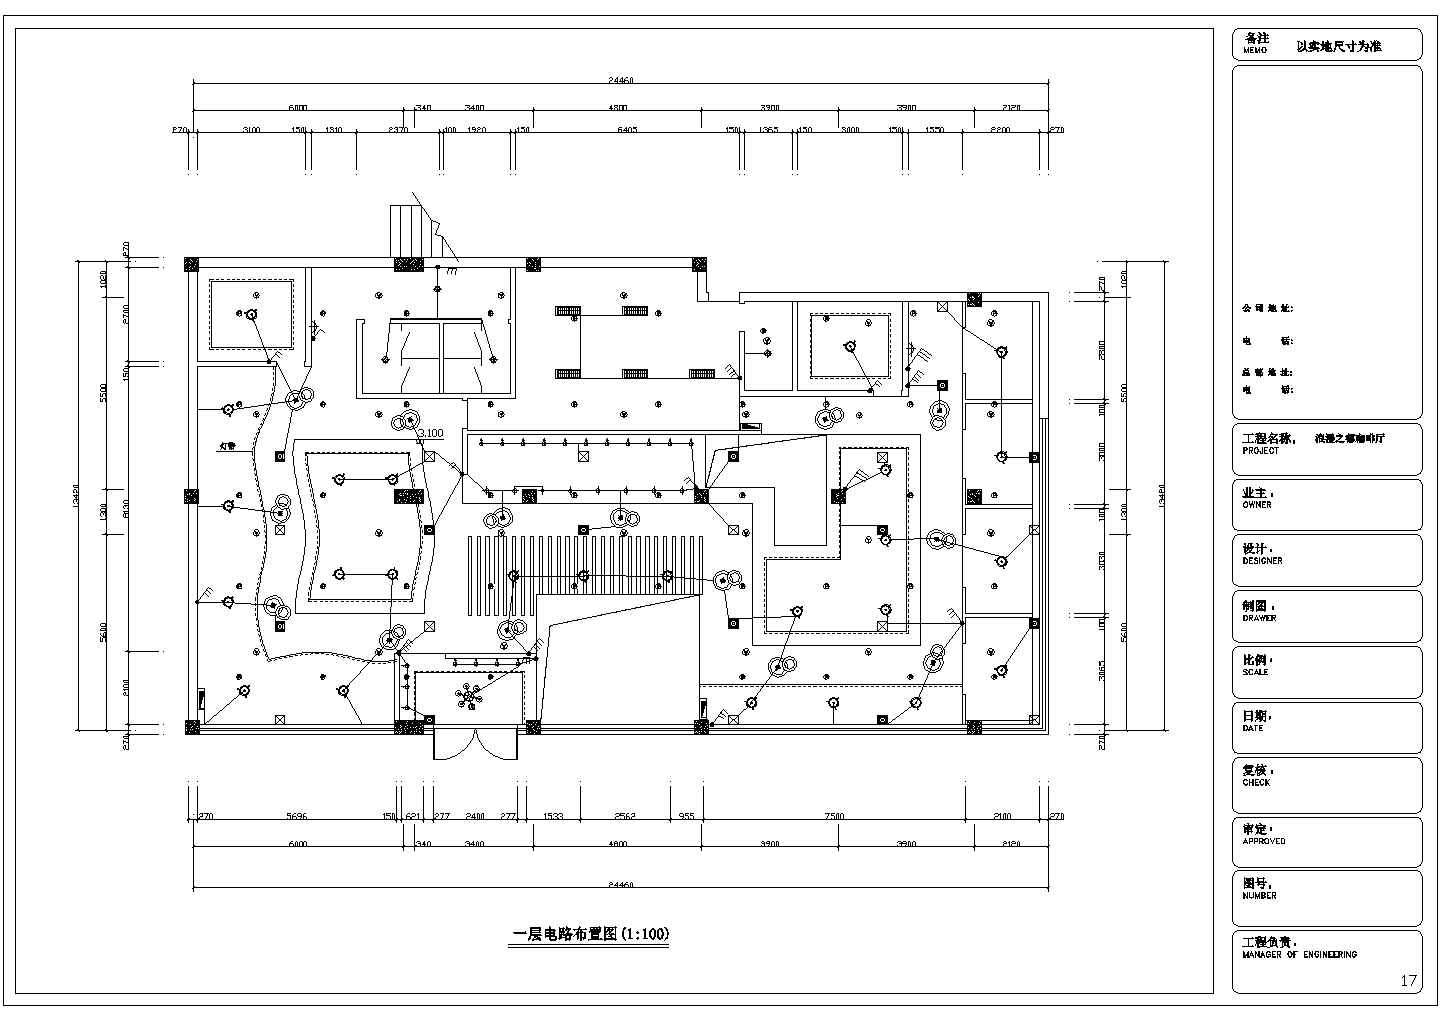 锦绣花园长24.46米 宽13.42米 二层浪漫之都咖啡厅内部装修设计图纸